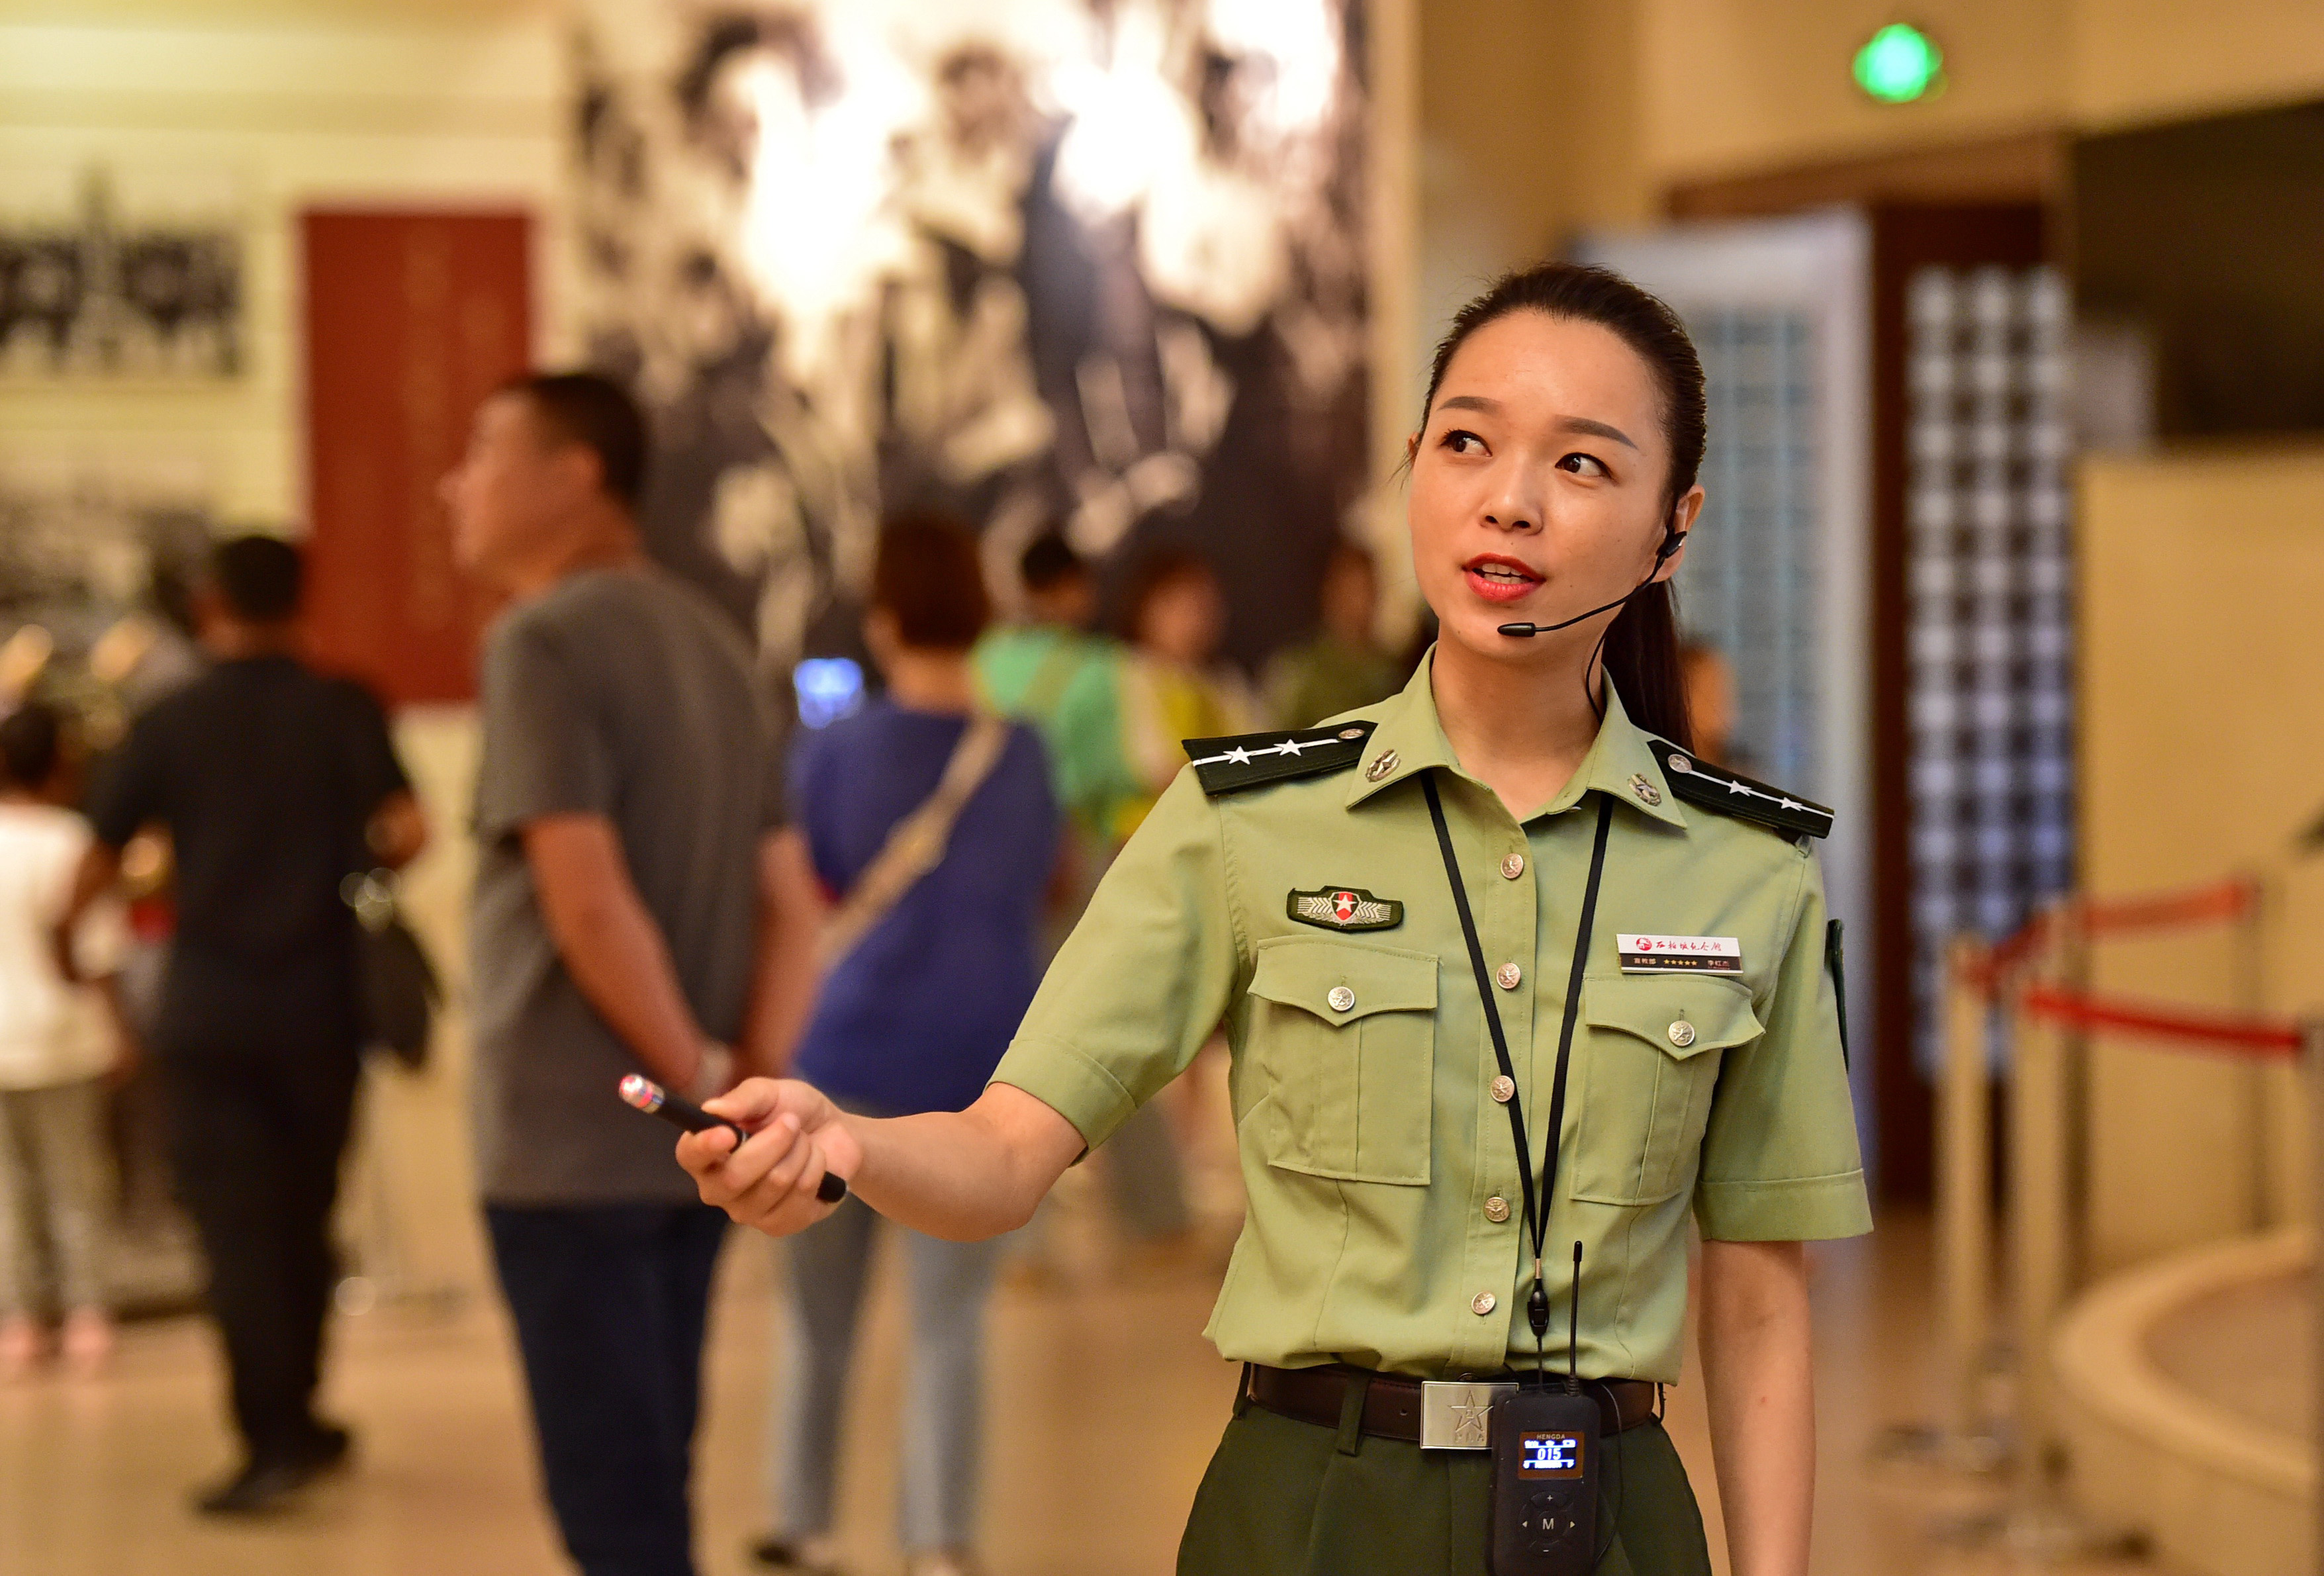 8月30日,在河北省平山县西柏坡纪念馆,讲解员李红杰在为游客进行讲解